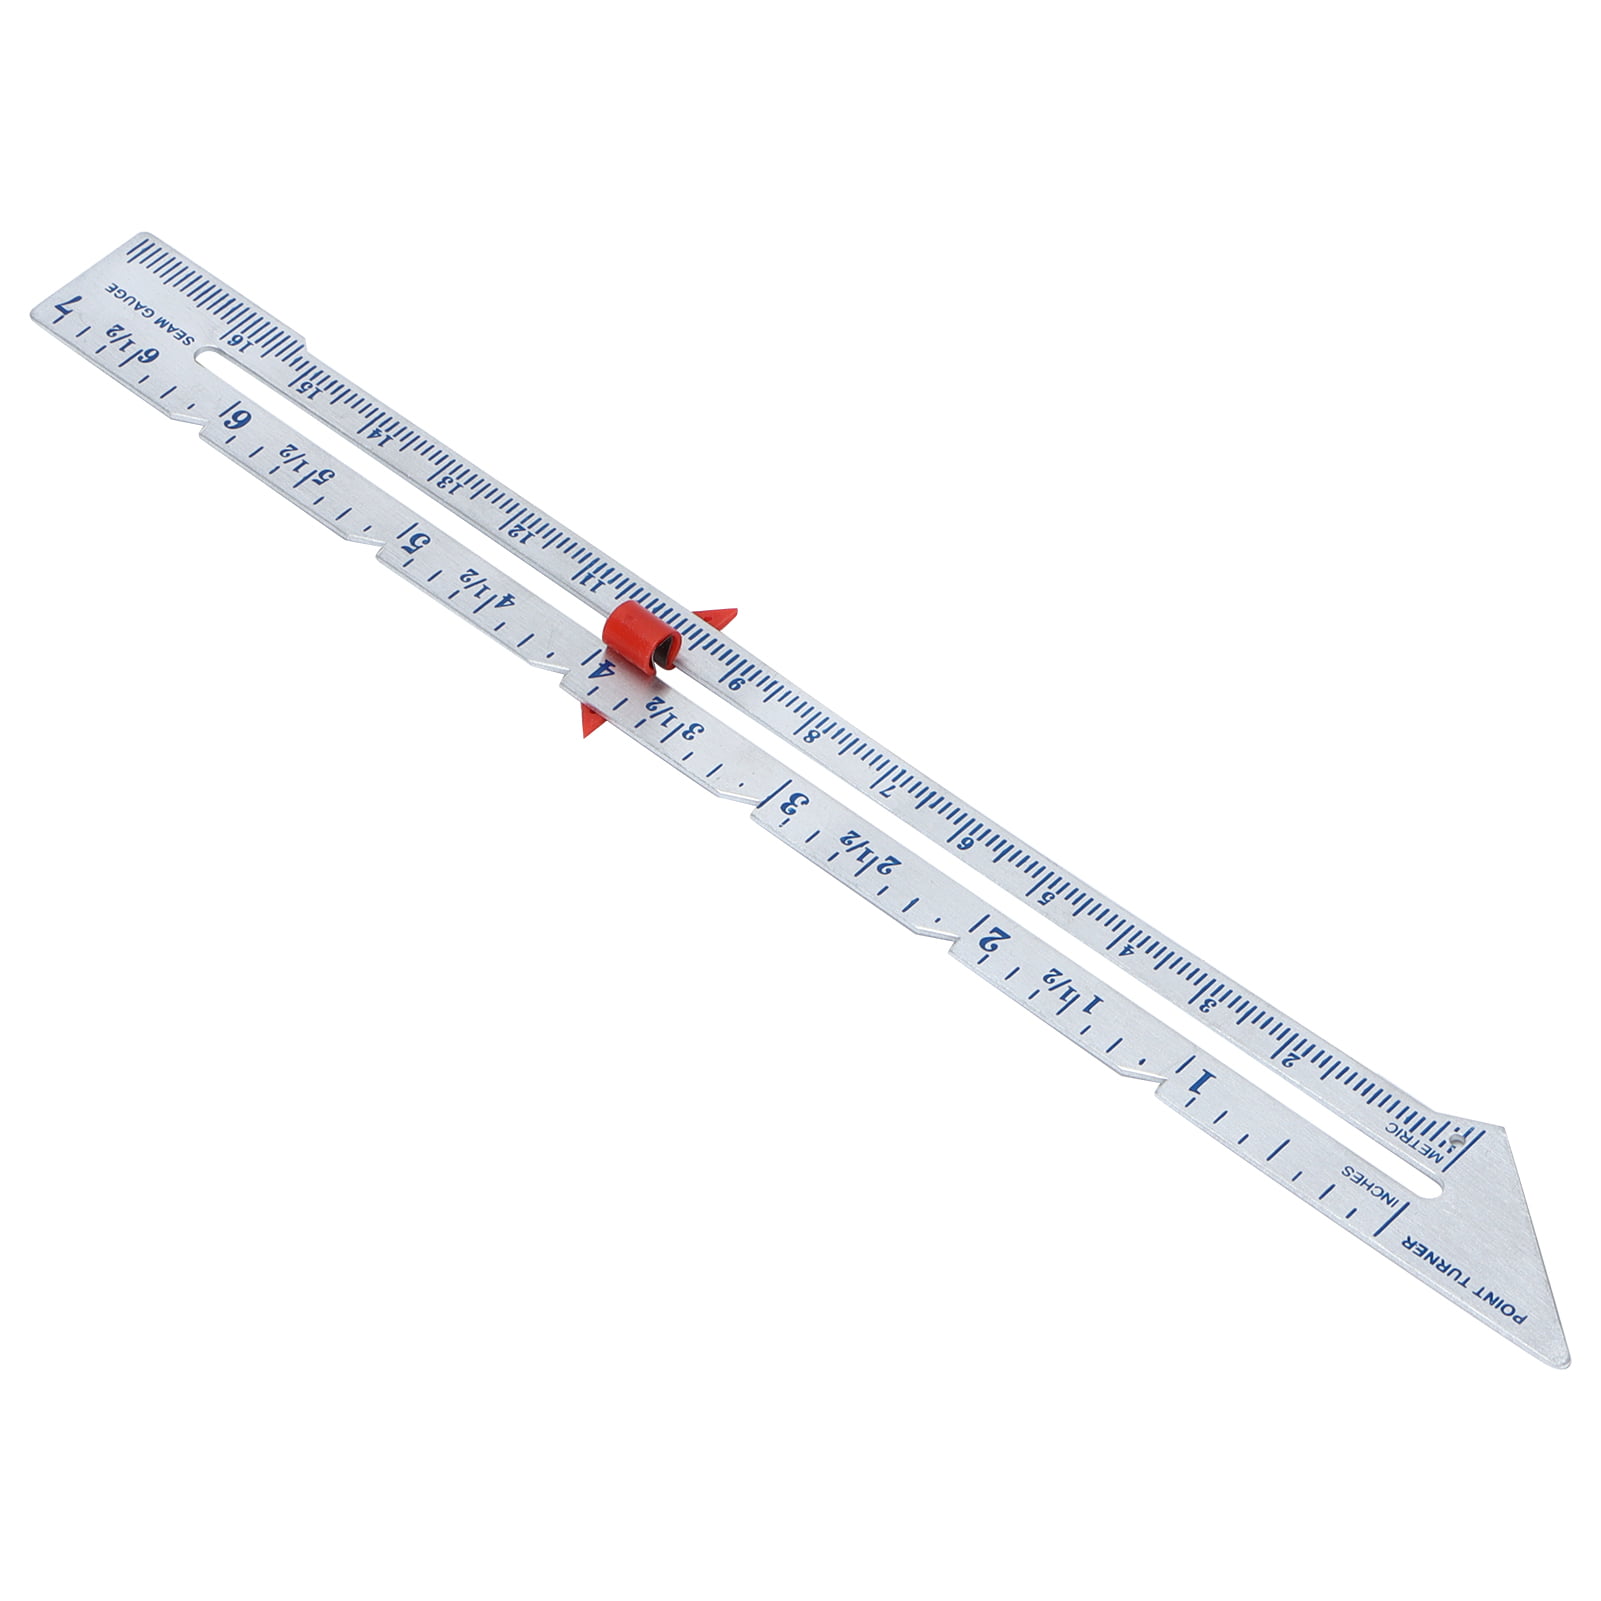 2 1/2" AQSR Adjustable Quilting Slide Ruler 